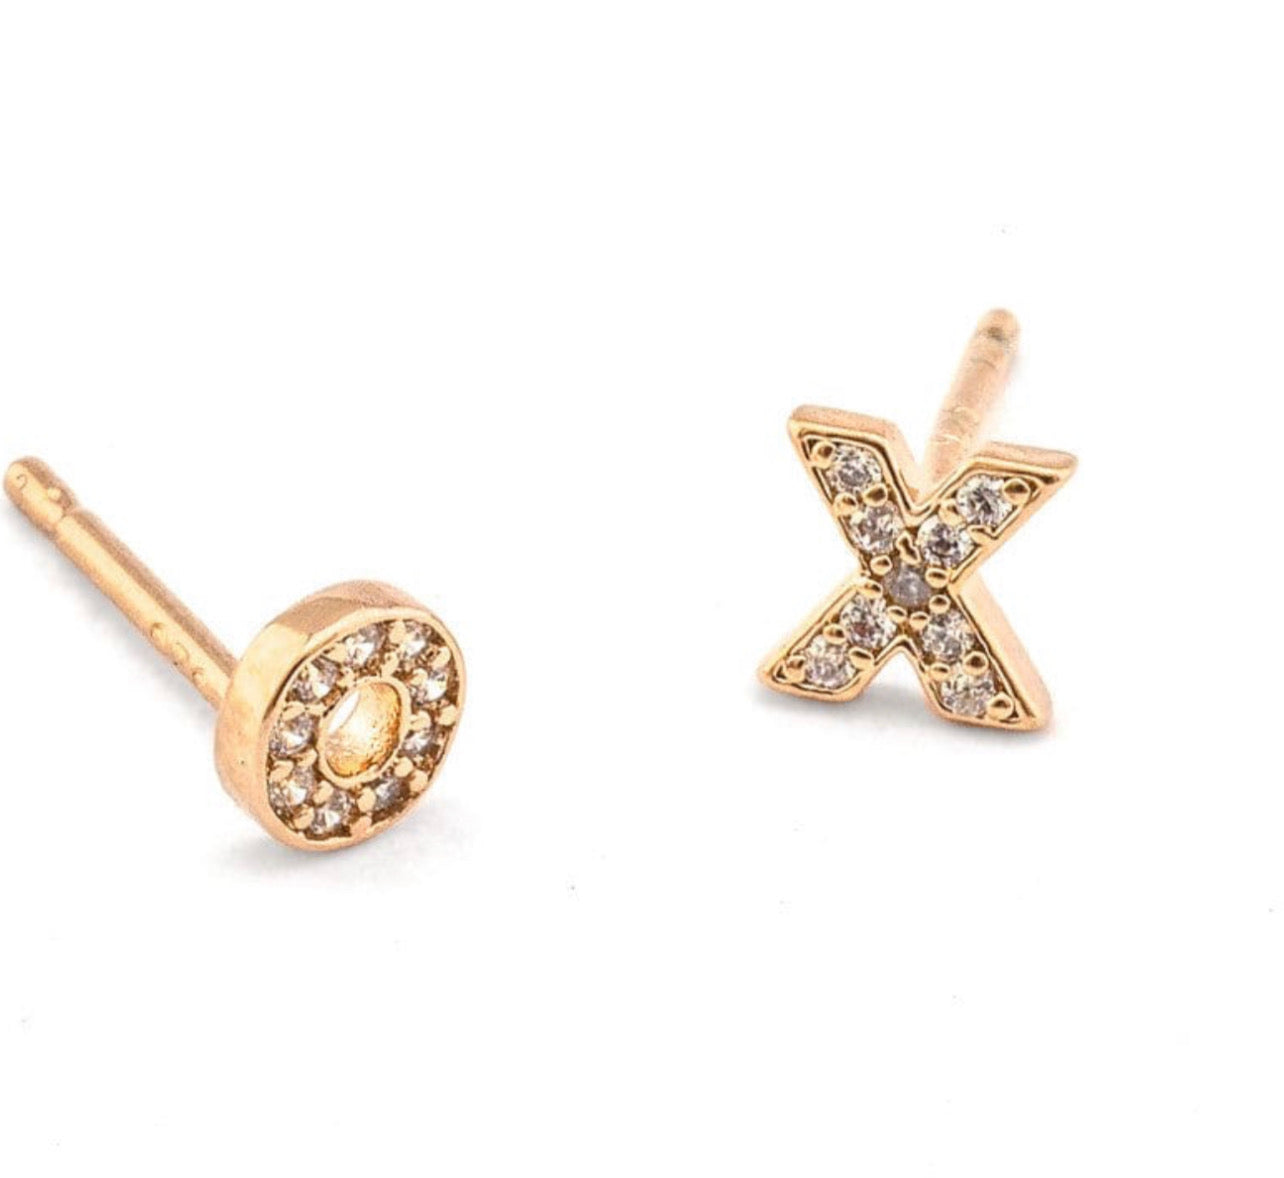 XOXO Earrings, TAI Jewelry